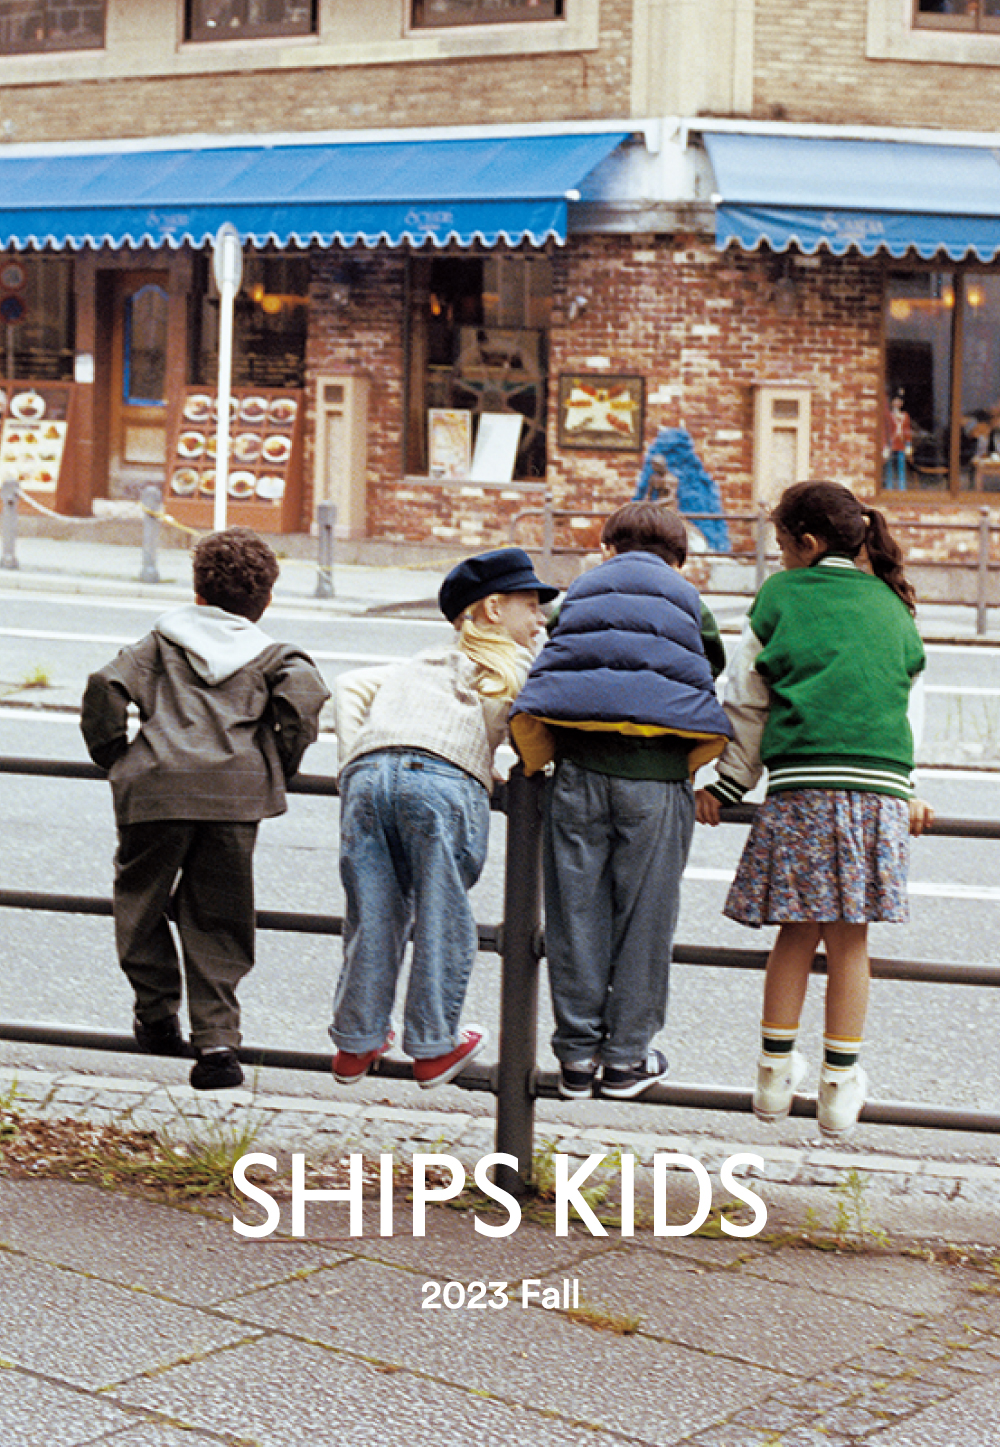 SHIPS KIDS 2023 FALL